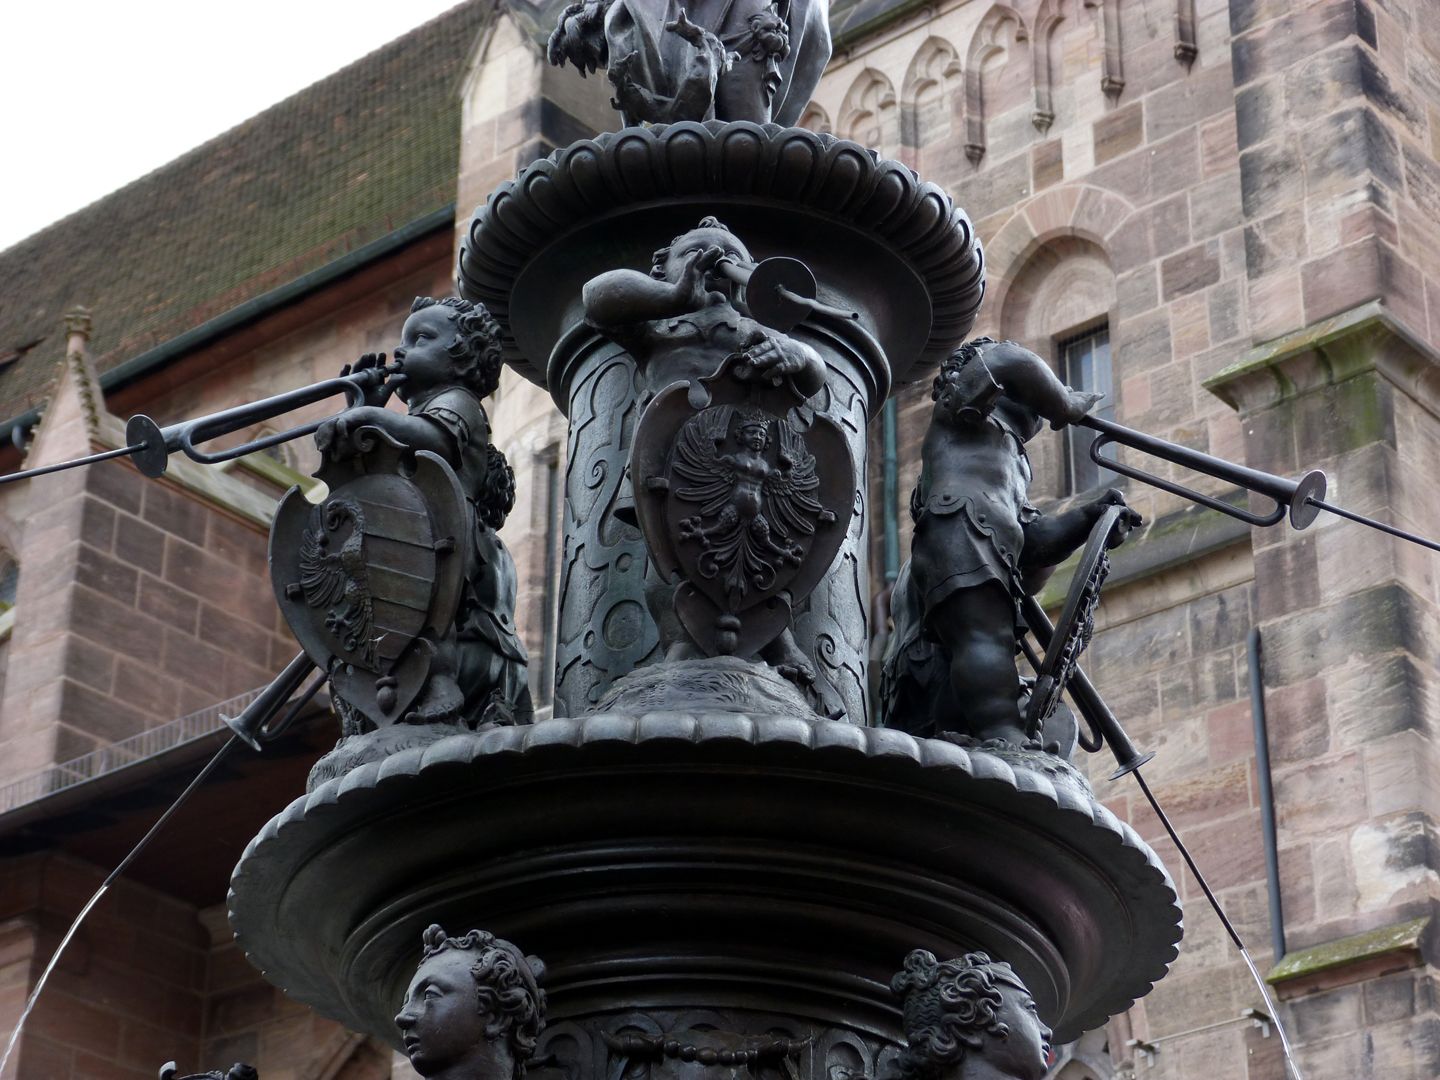 Tugendbrunnen Posauneblasende Knaben mit Wappenschilden